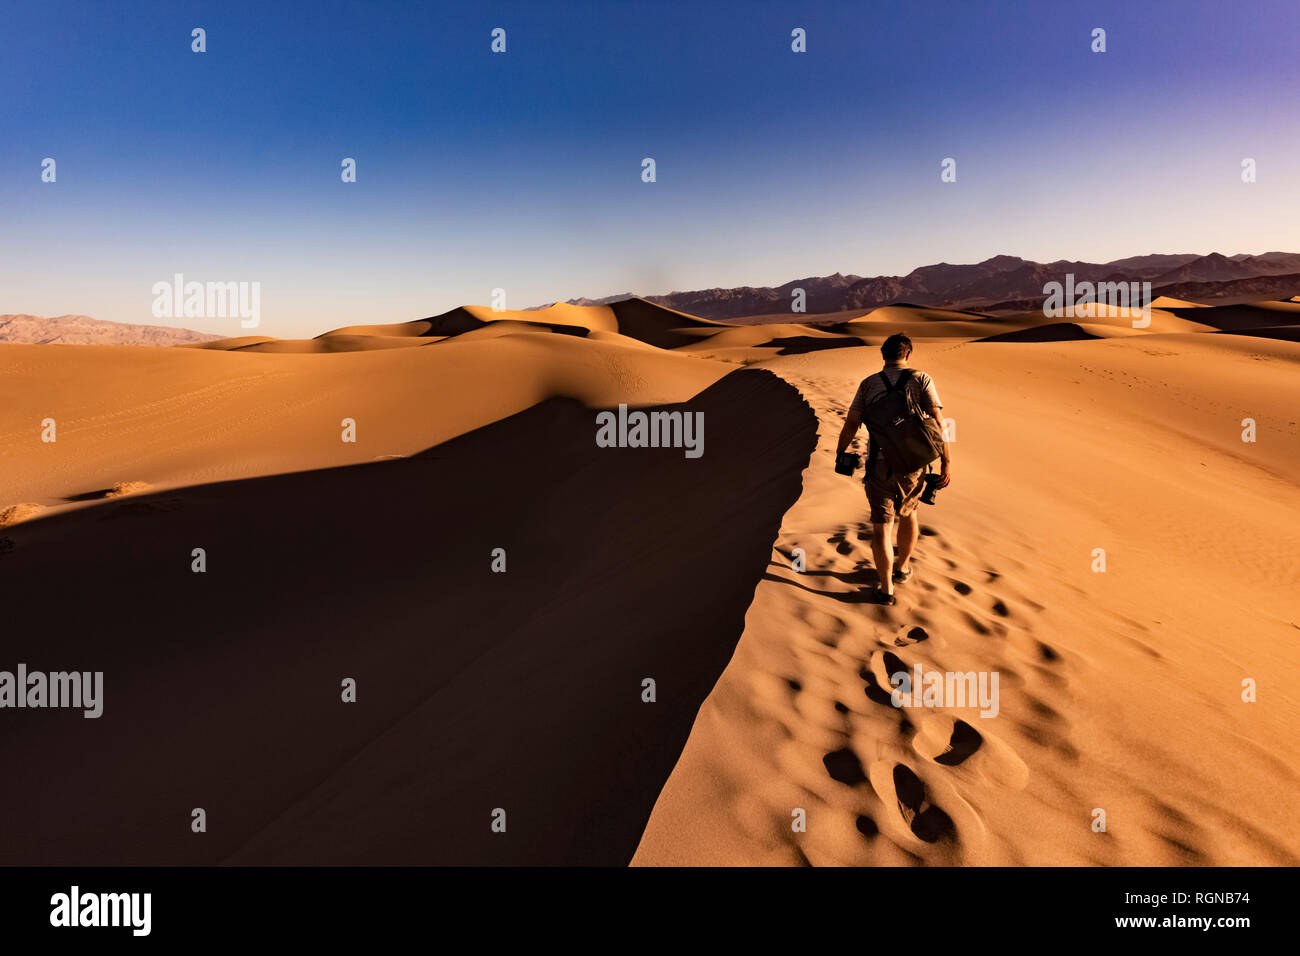 USA, californien, la vallée de la mort, Death Valley National Park, Mesquite Flat dunes de sable, l'homme marche sur dune Banque D'Images